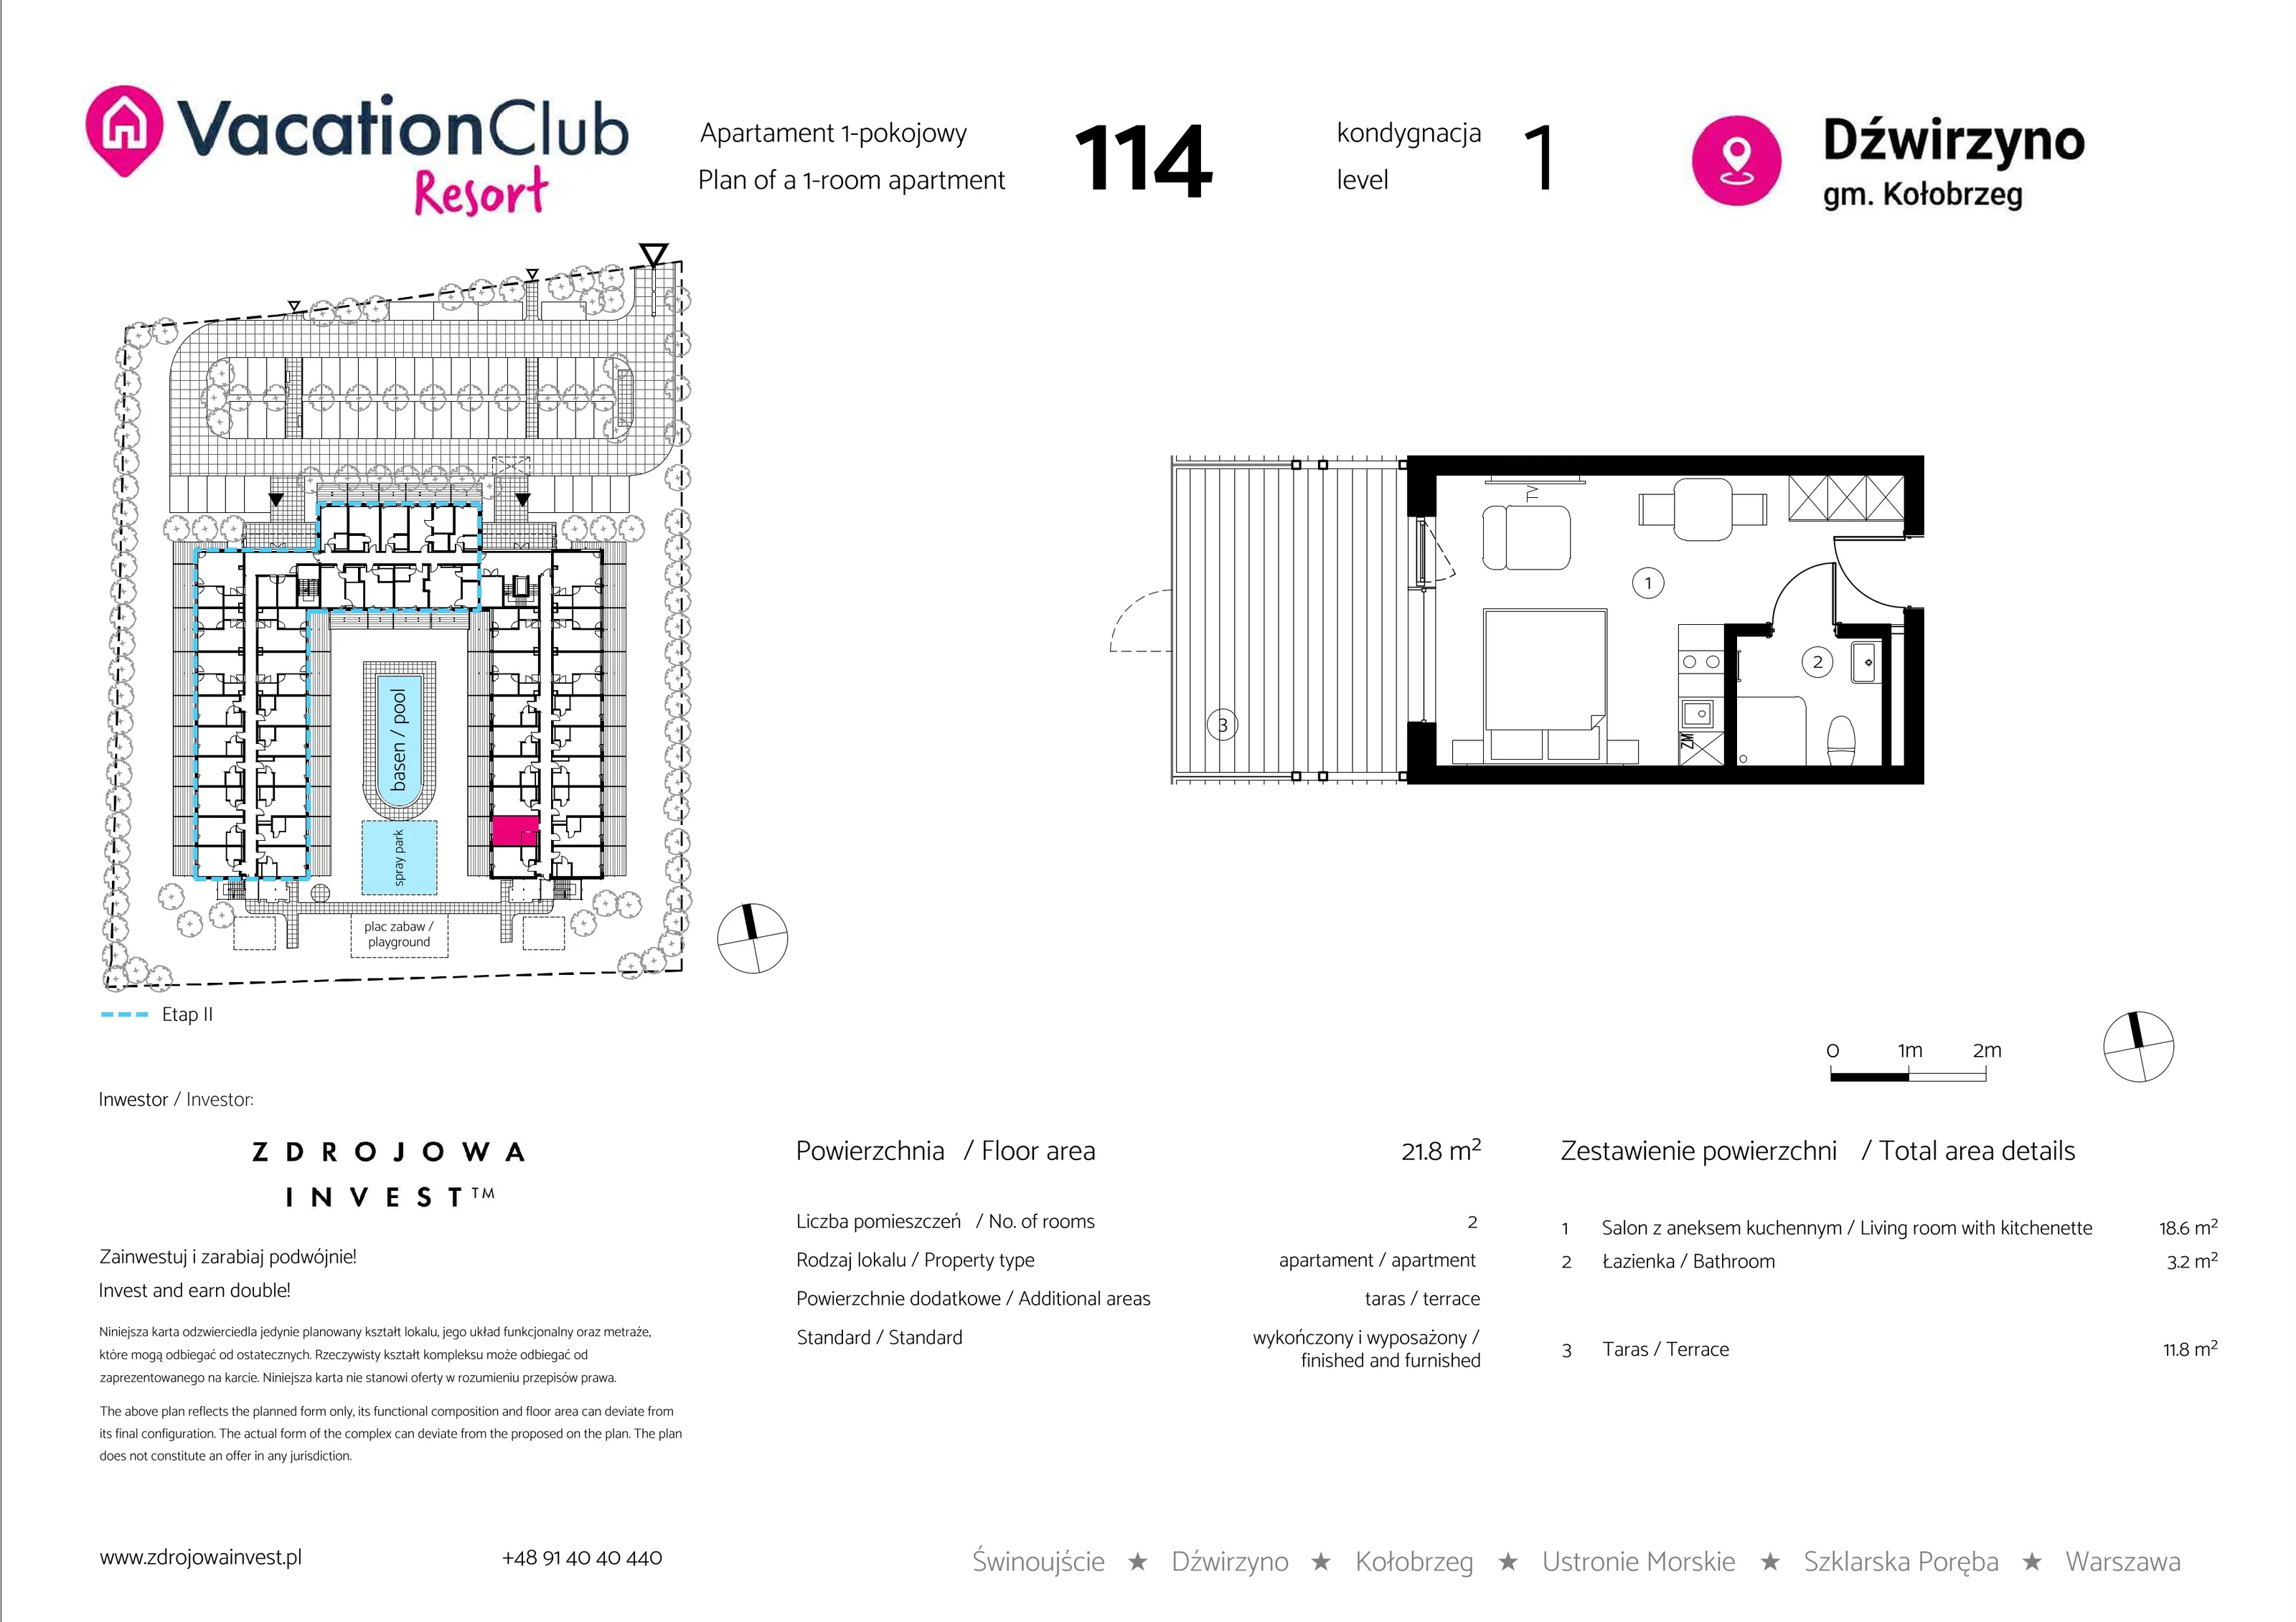 Apartament 21,80 m², parter, oferta nr 114, Vacation Club Resort - apartamenty wakacyjne, Dźwirzyno, ul. Wczasowa 8